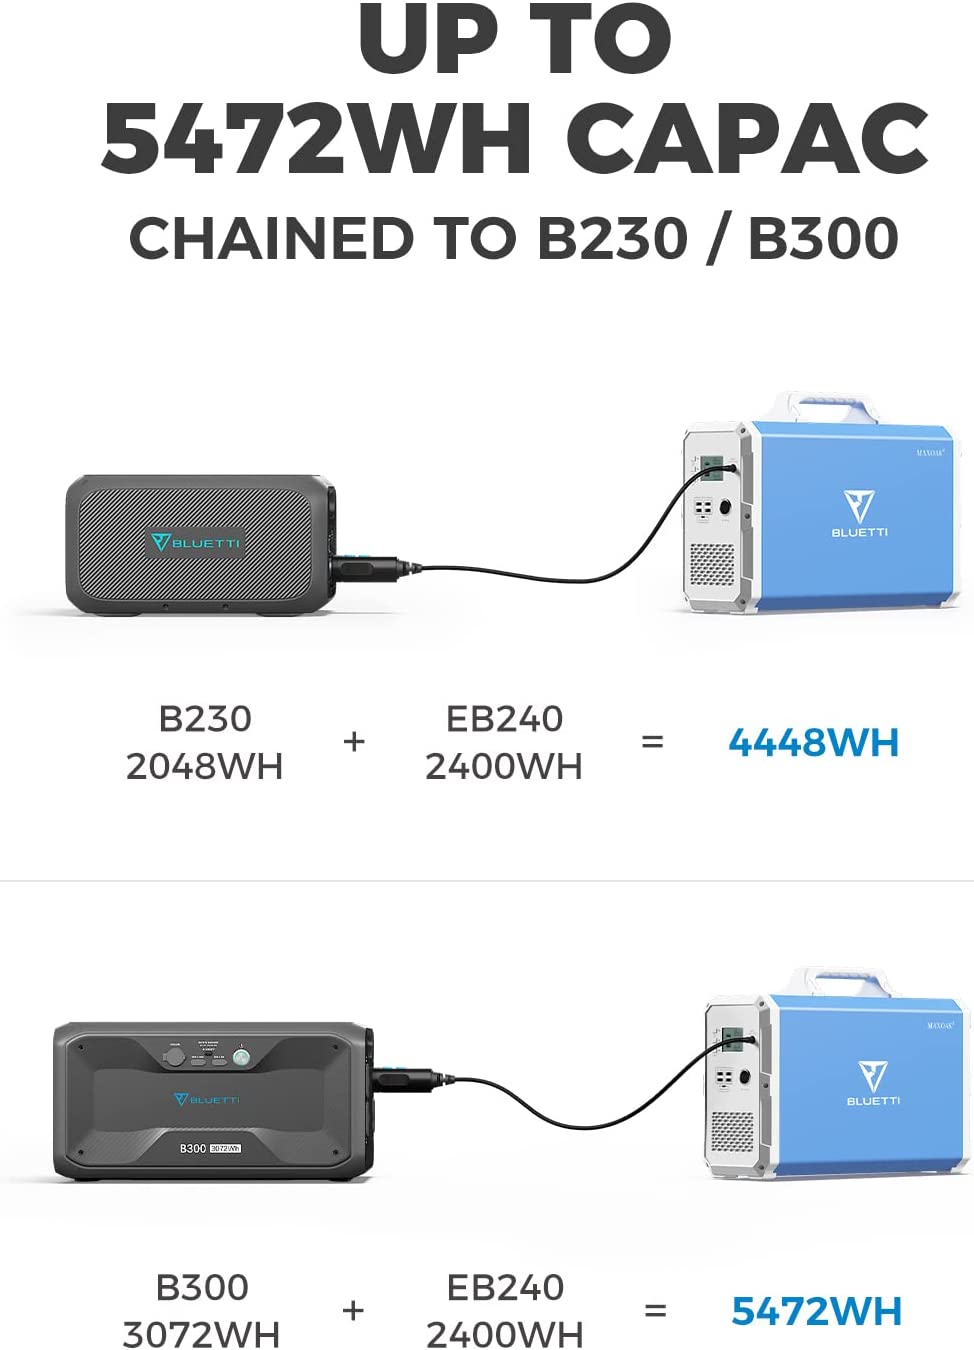 La capacidad de la Bluetti puede ser extendida hasta 5472Wh con las baterias Bluetti B230 o B300.